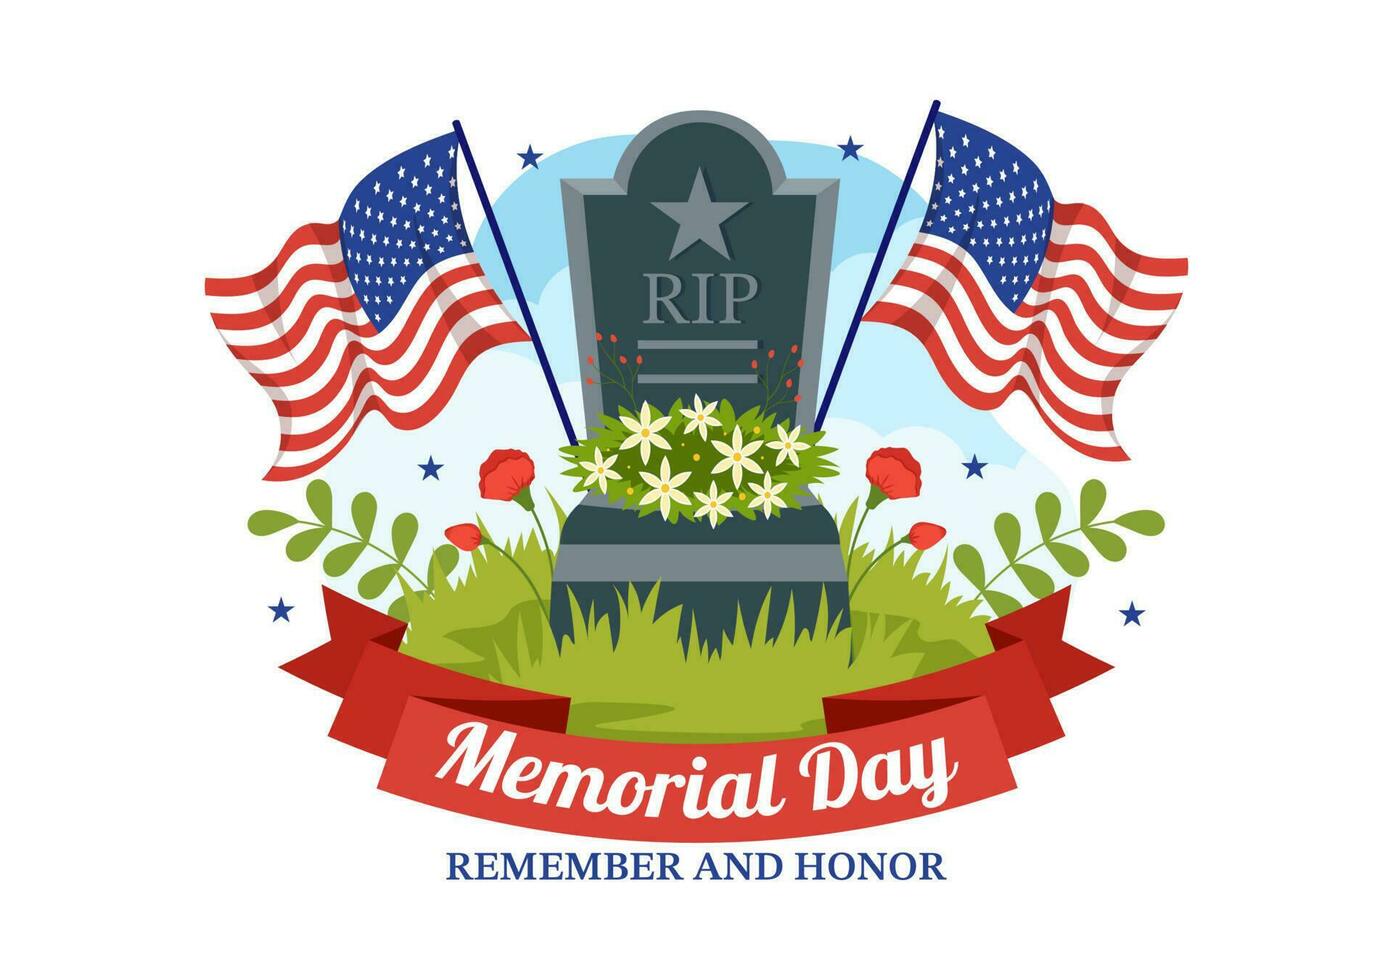 Mémorial journée illustration avec américain drapeau, rappelles toi et honneur à méritoire soldat dans plat dessin animé main tiré pour atterrissage page modèles vecteur